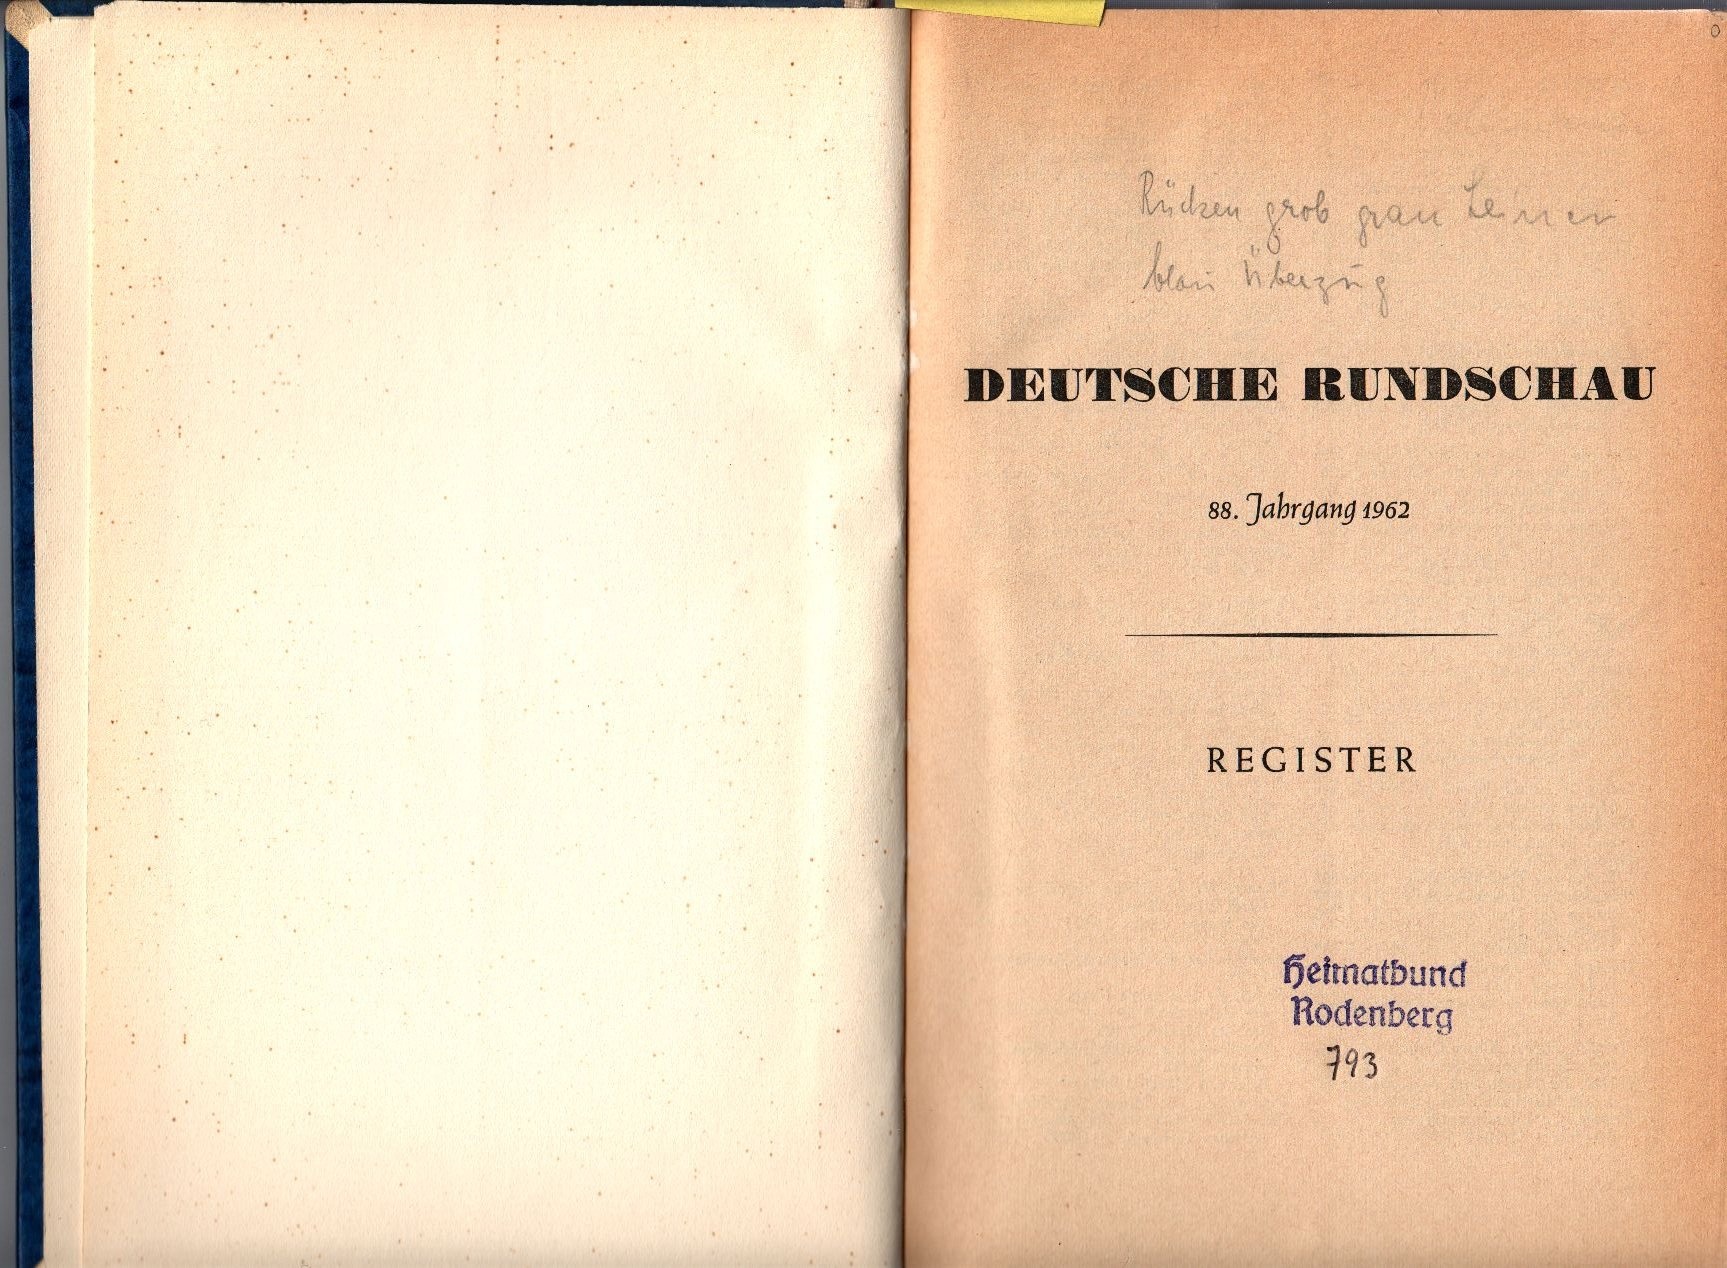 Deutsche Rundschau, 1962 (Museumslandschaft Amt Rodenberg e.V. CC BY-NC-SA)